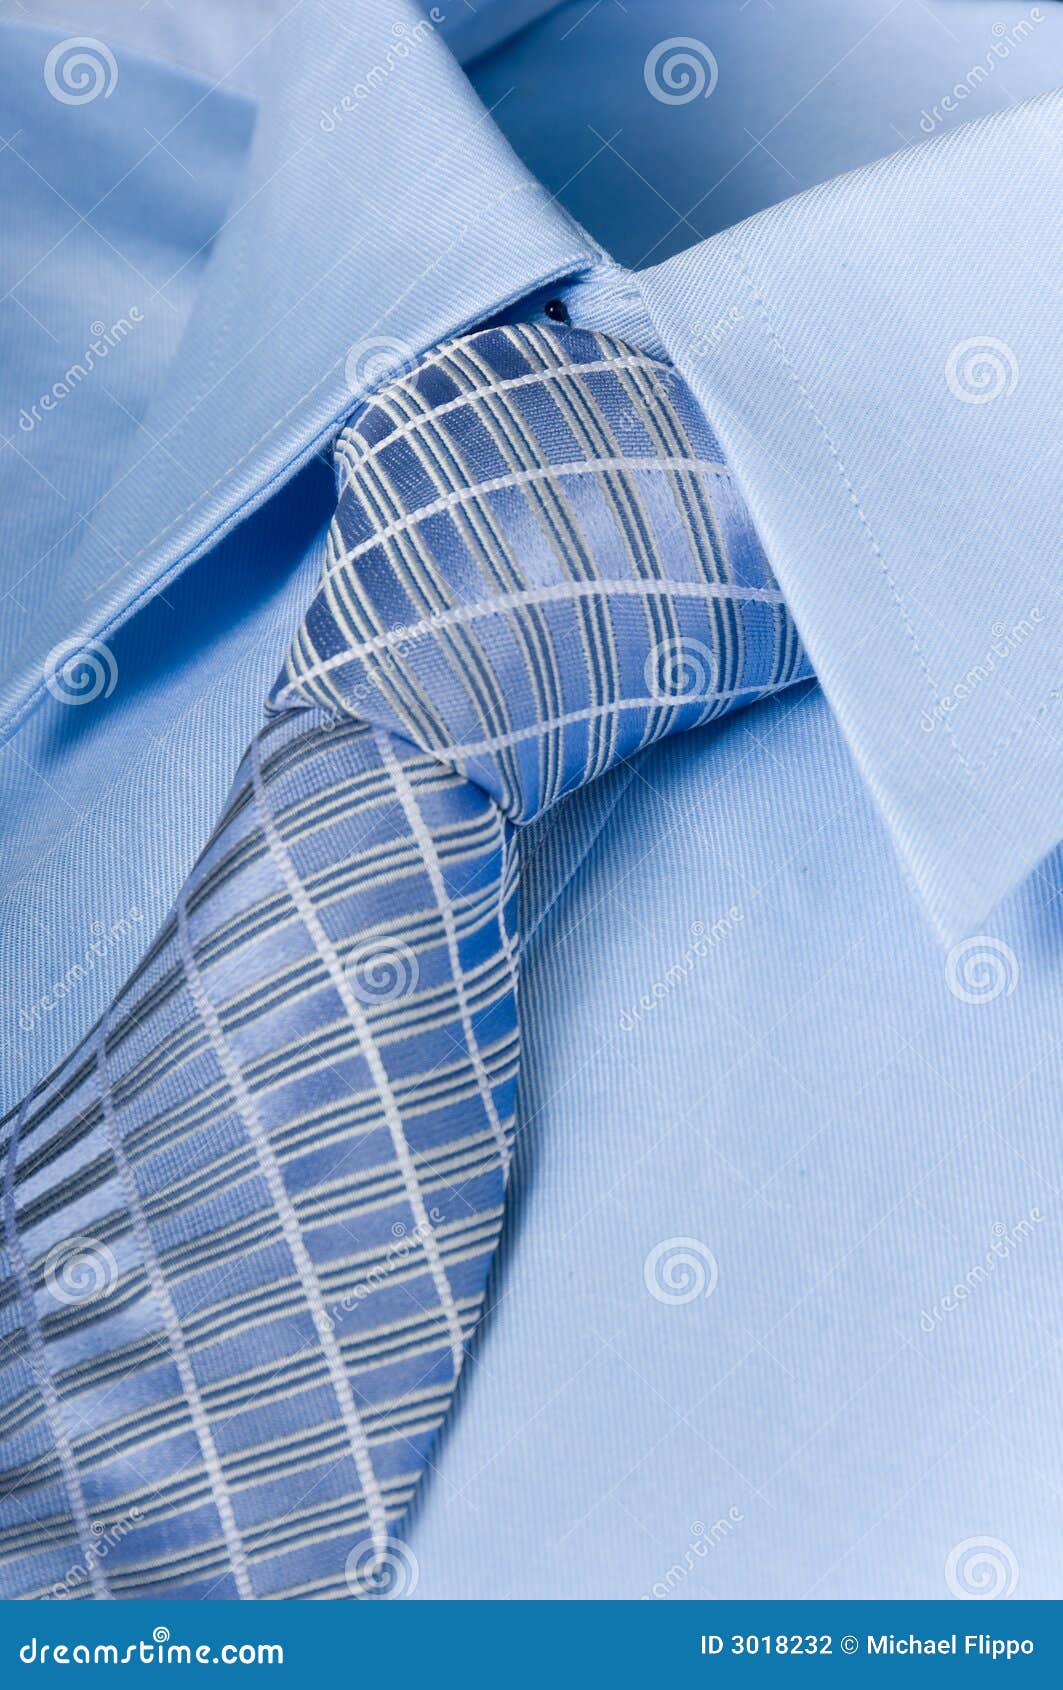 yermo Pronunciar nicotina Camisa Y Corbata Del Hombre Foto de archivo - Imagen de tela, azul: 3018232